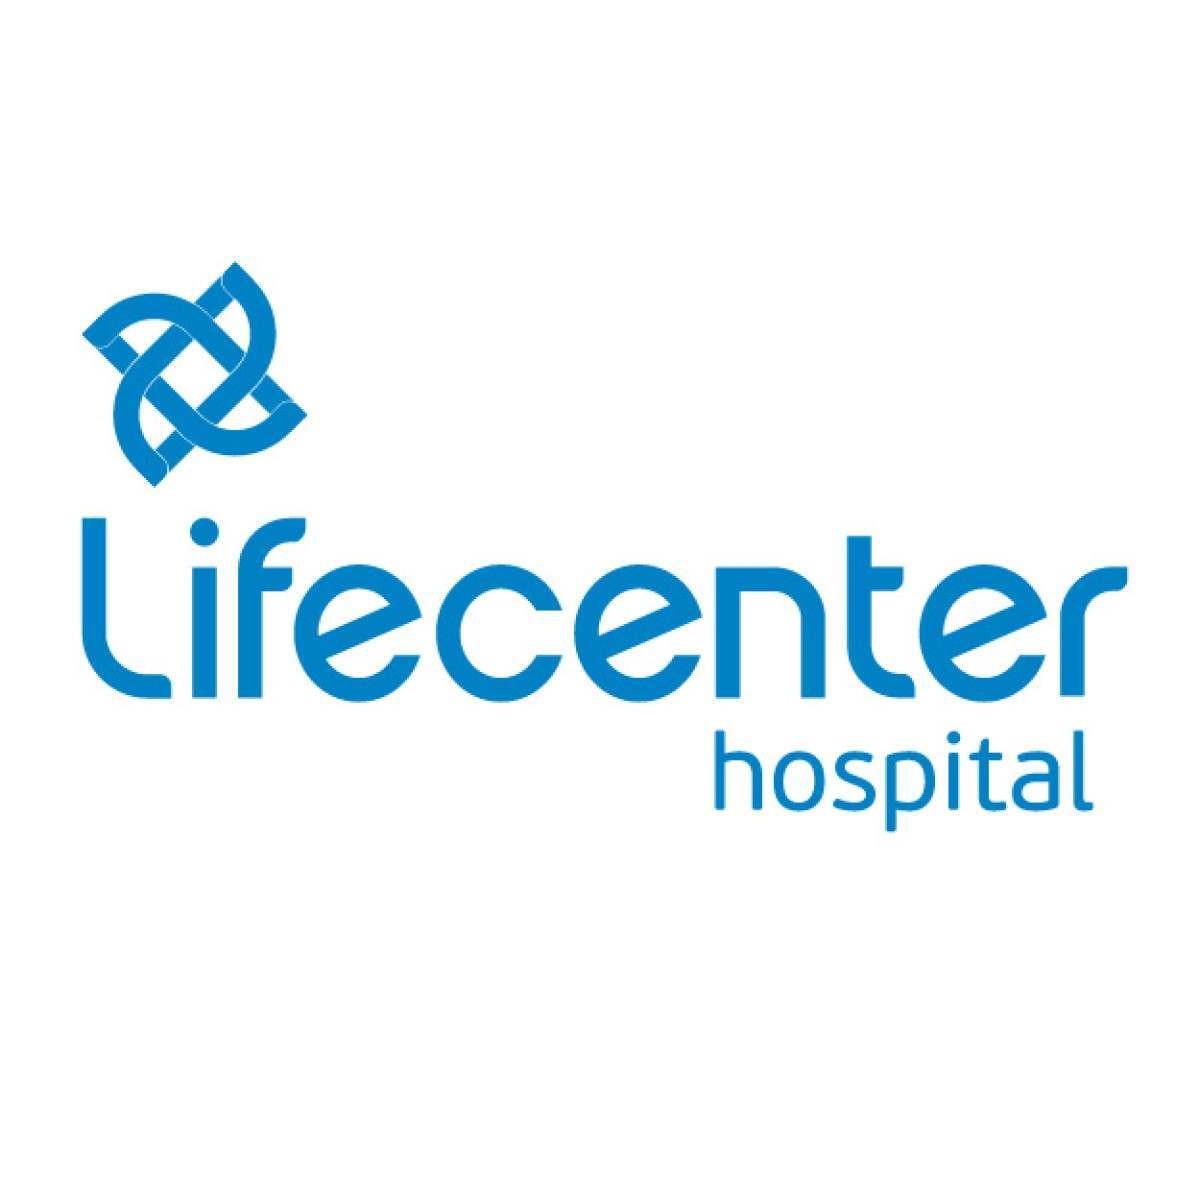 Hospital Lifecenter